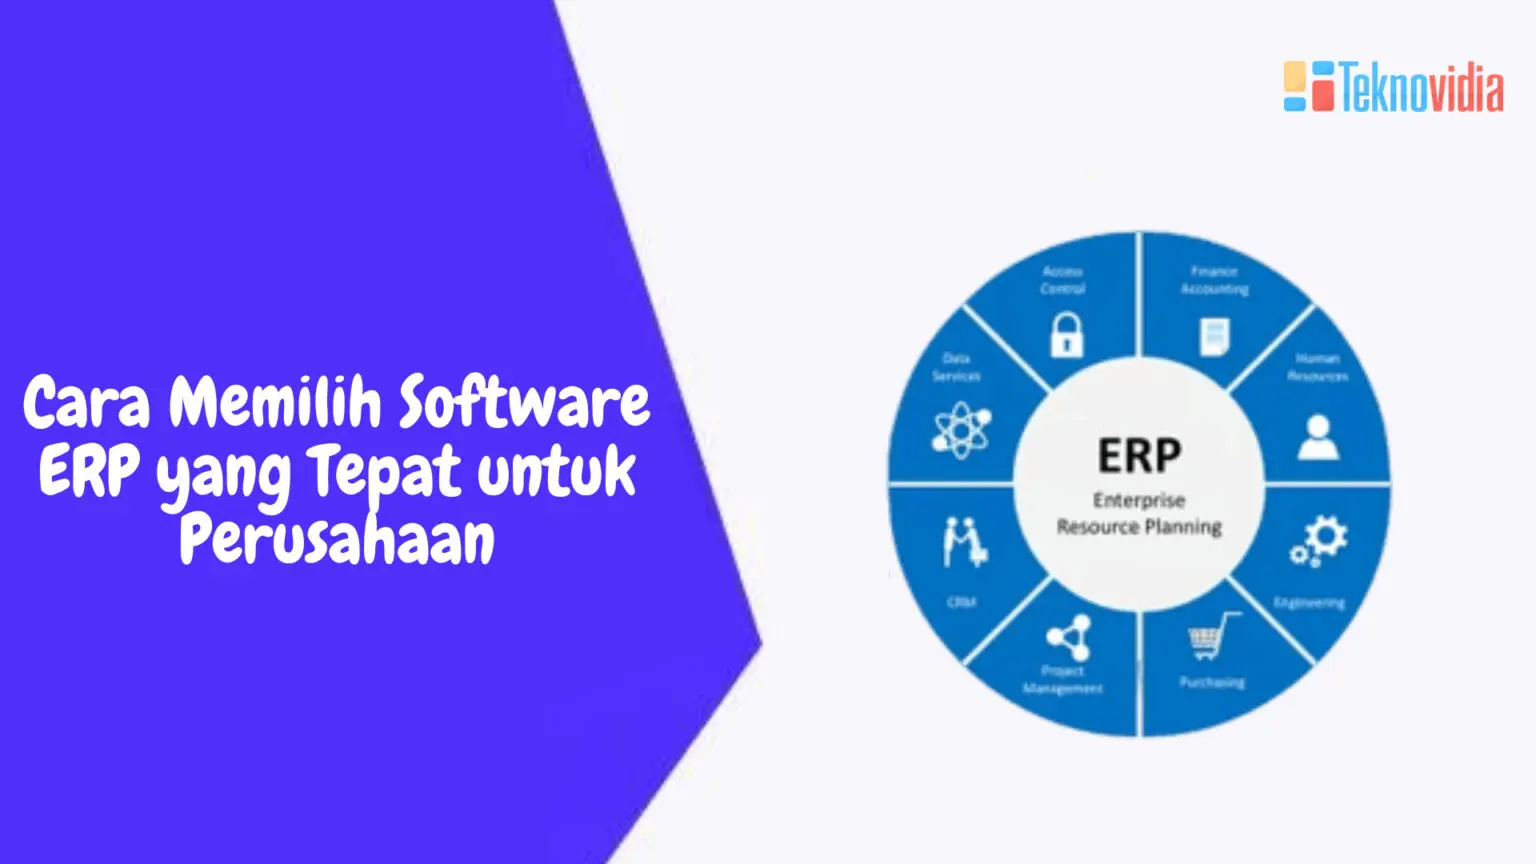 Cara Memilih Software ERP yang Tepat untuk Perusahaan